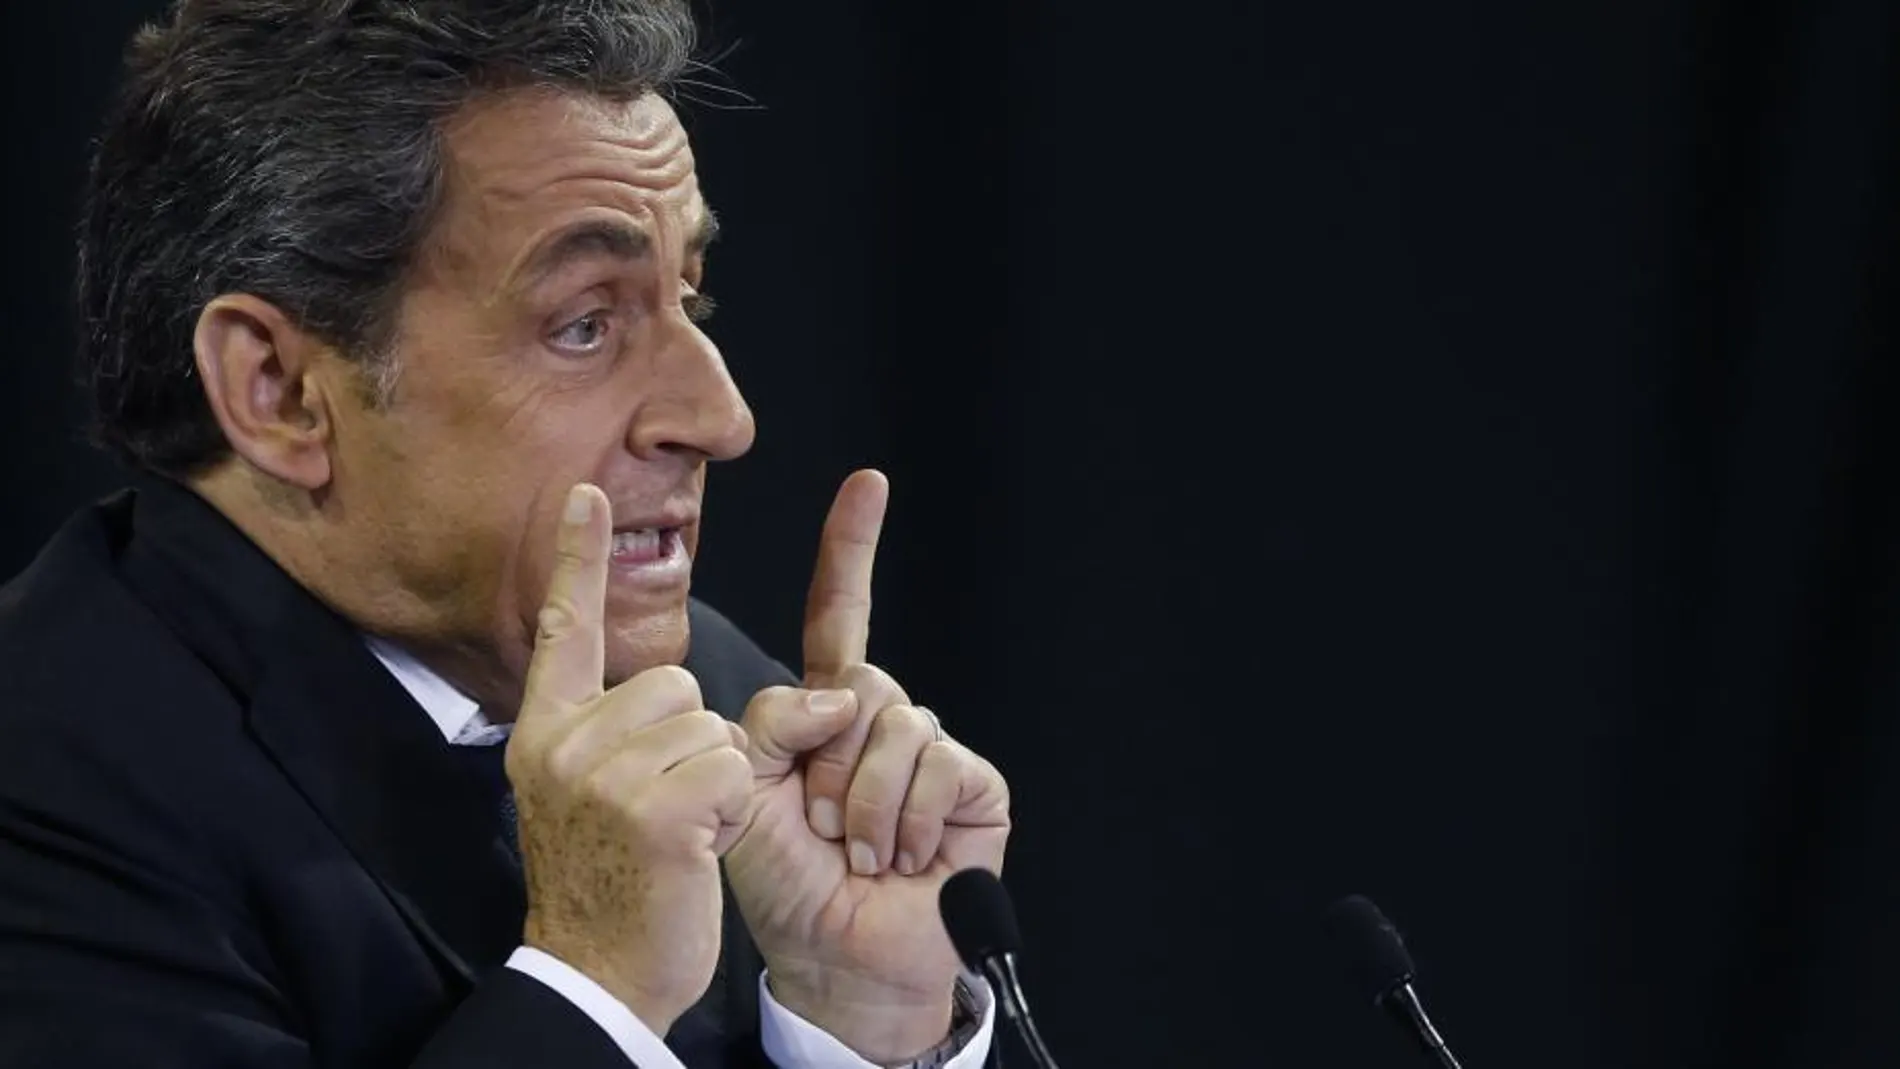 Escaso apoyo del electorado francés a la posible candidatura de Sarkozy para las elecciones.